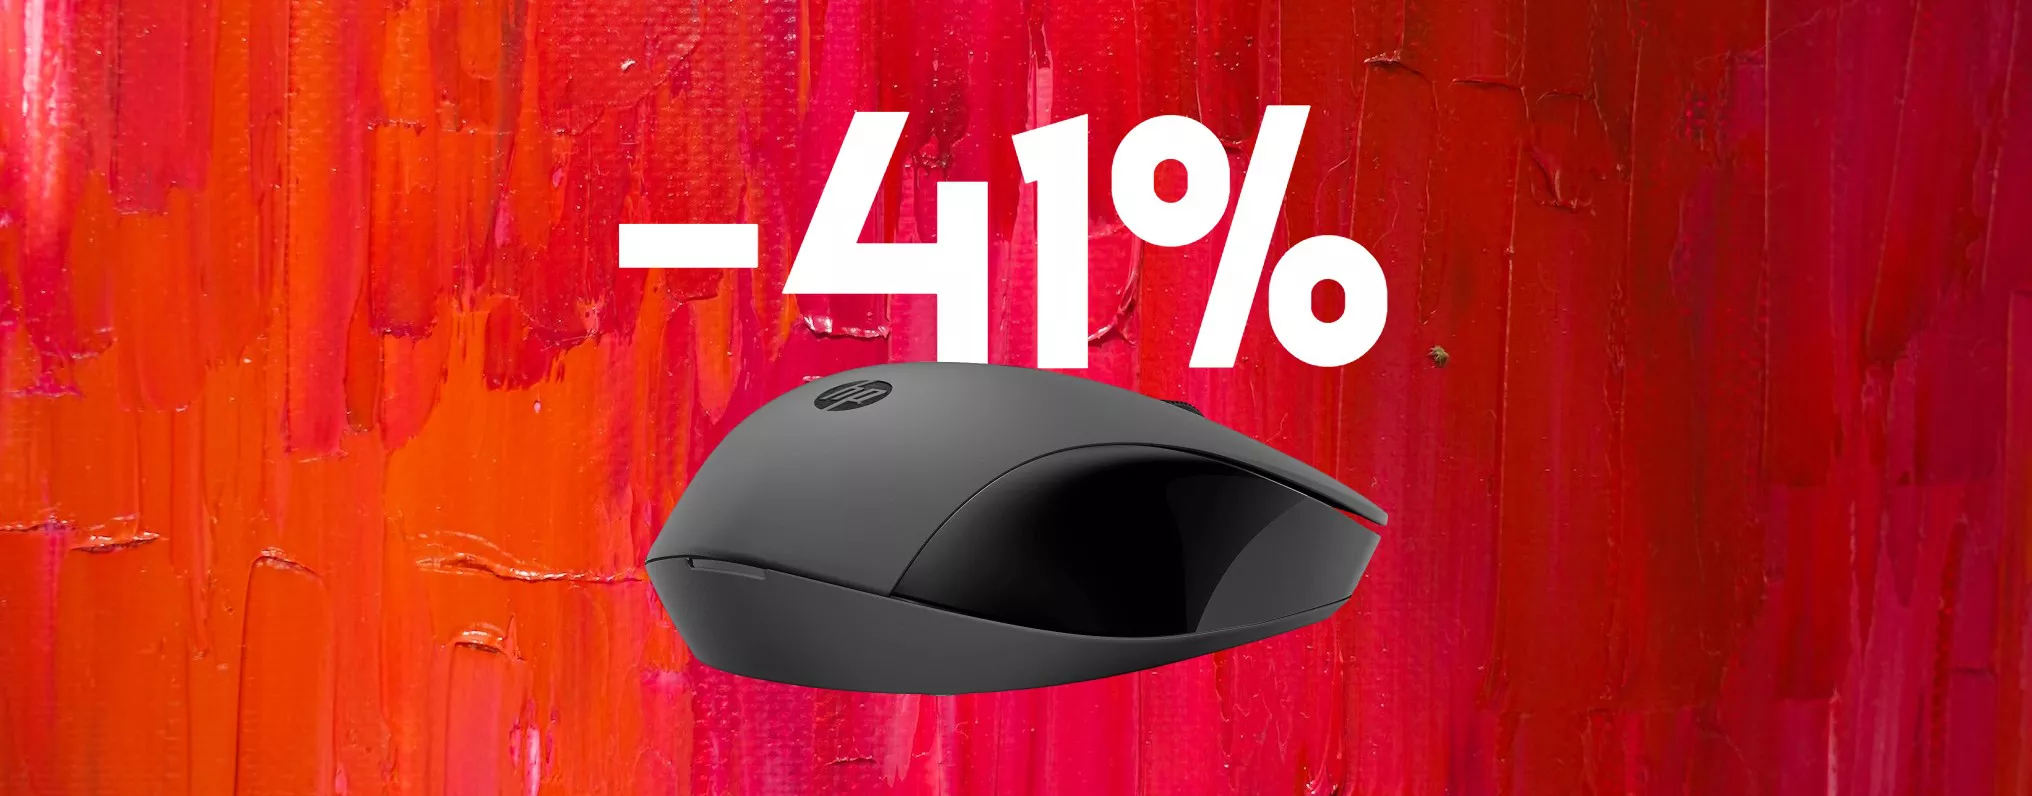 Mouse HP wireless per Mac e PC Windows SCONTATO del 41%: tuo a meno di 10€